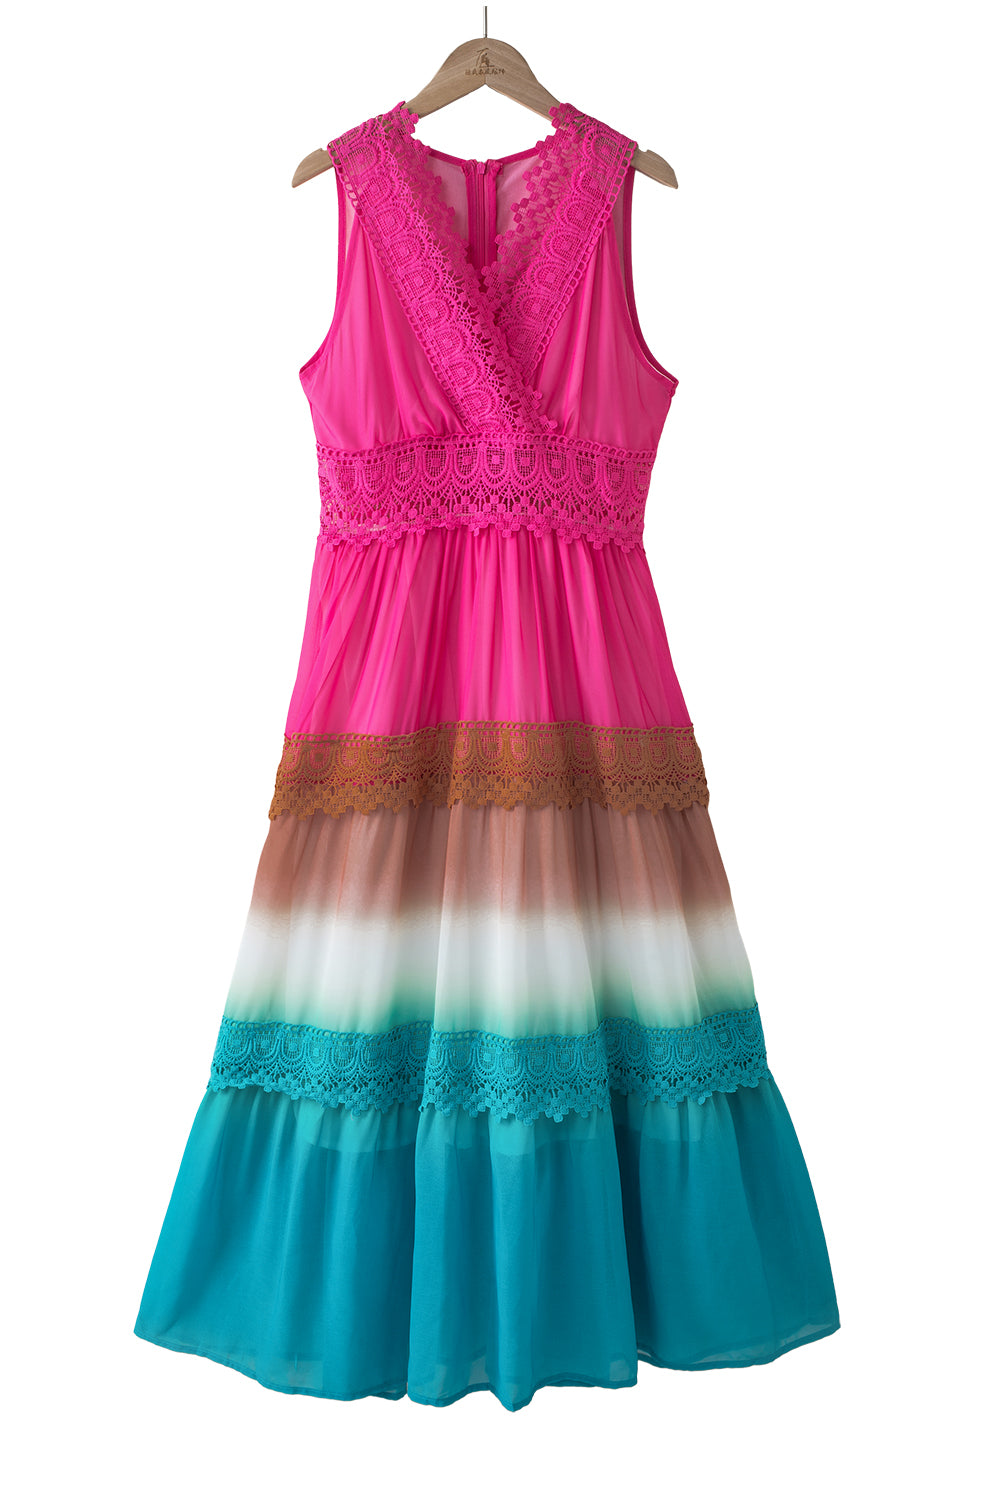 Langes Kleid mit mehrfarbigen Spitzennähten und Farbverlauf in Regenbogenfarben